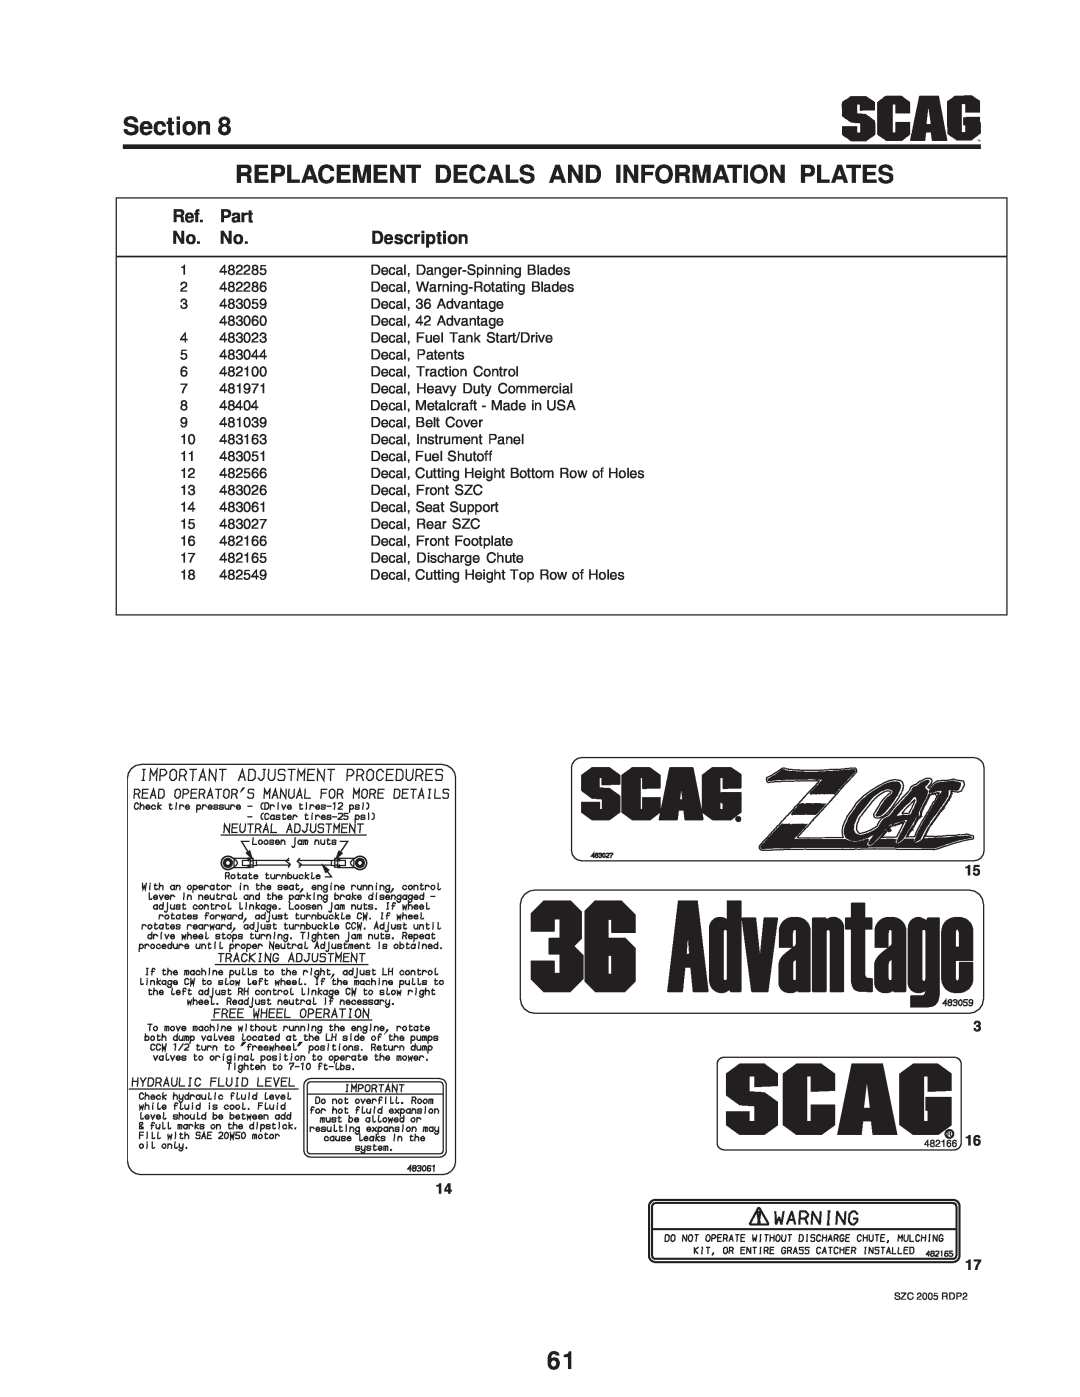 Scag Power Equipment SZC manual Part, Description, 482285 